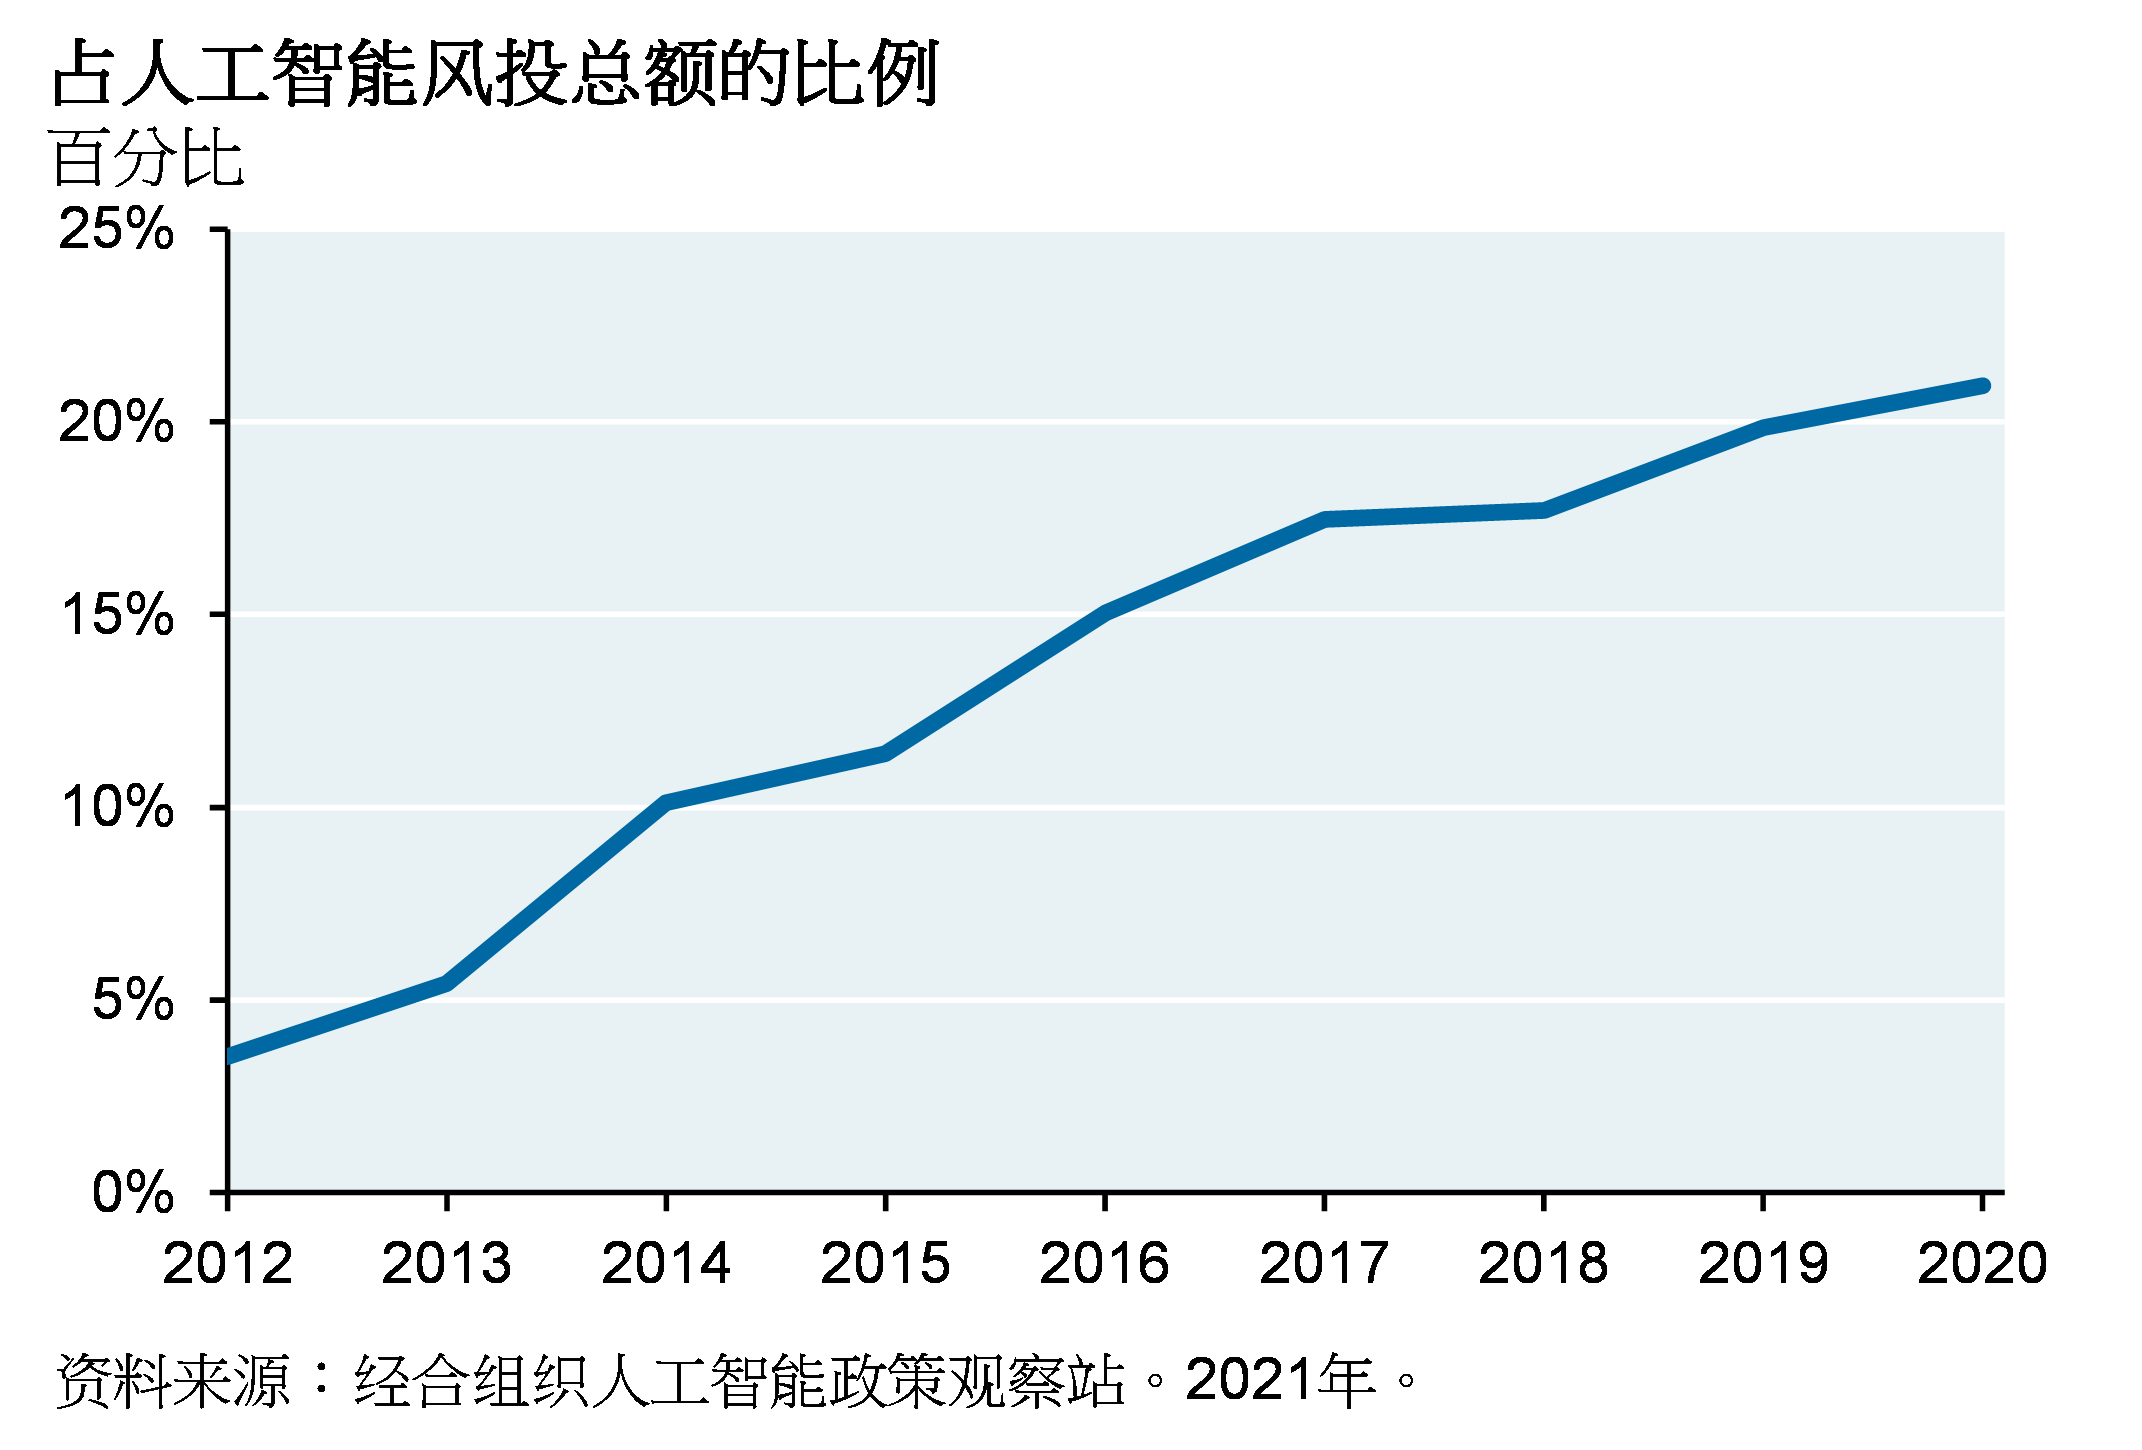 线图显示自2012年以来占人工智能风投总额的比例。图表展现自2012年以来，占人工智能投资的比例从5%左右上升至20%以上。